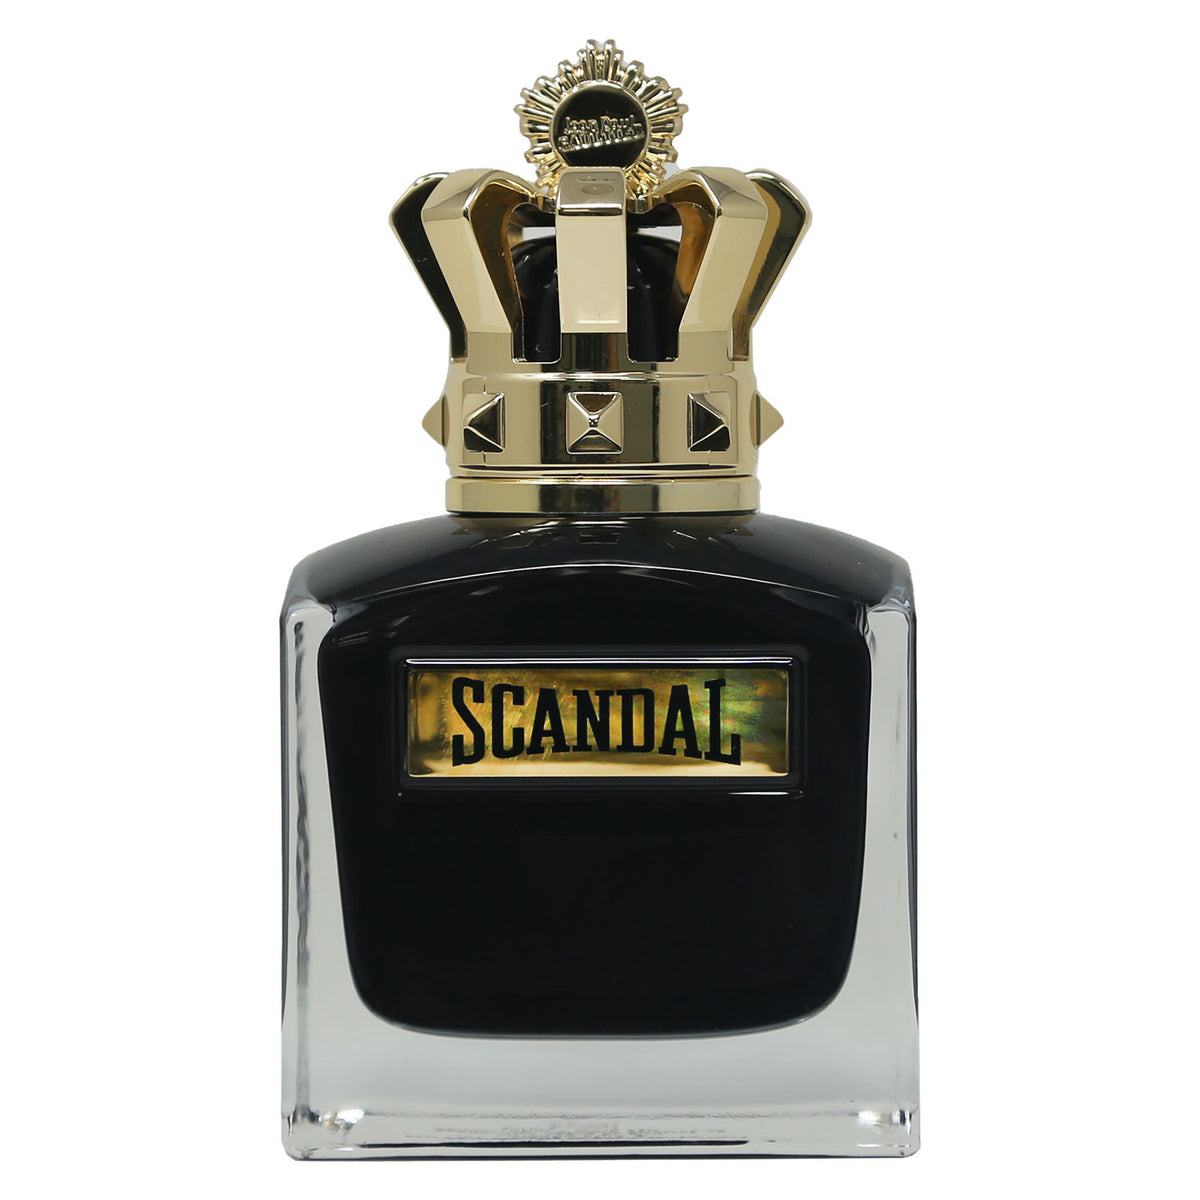 Scandal Pour Homme Le Parfum by Jean Paul Gaultier Fragrance Samples ...